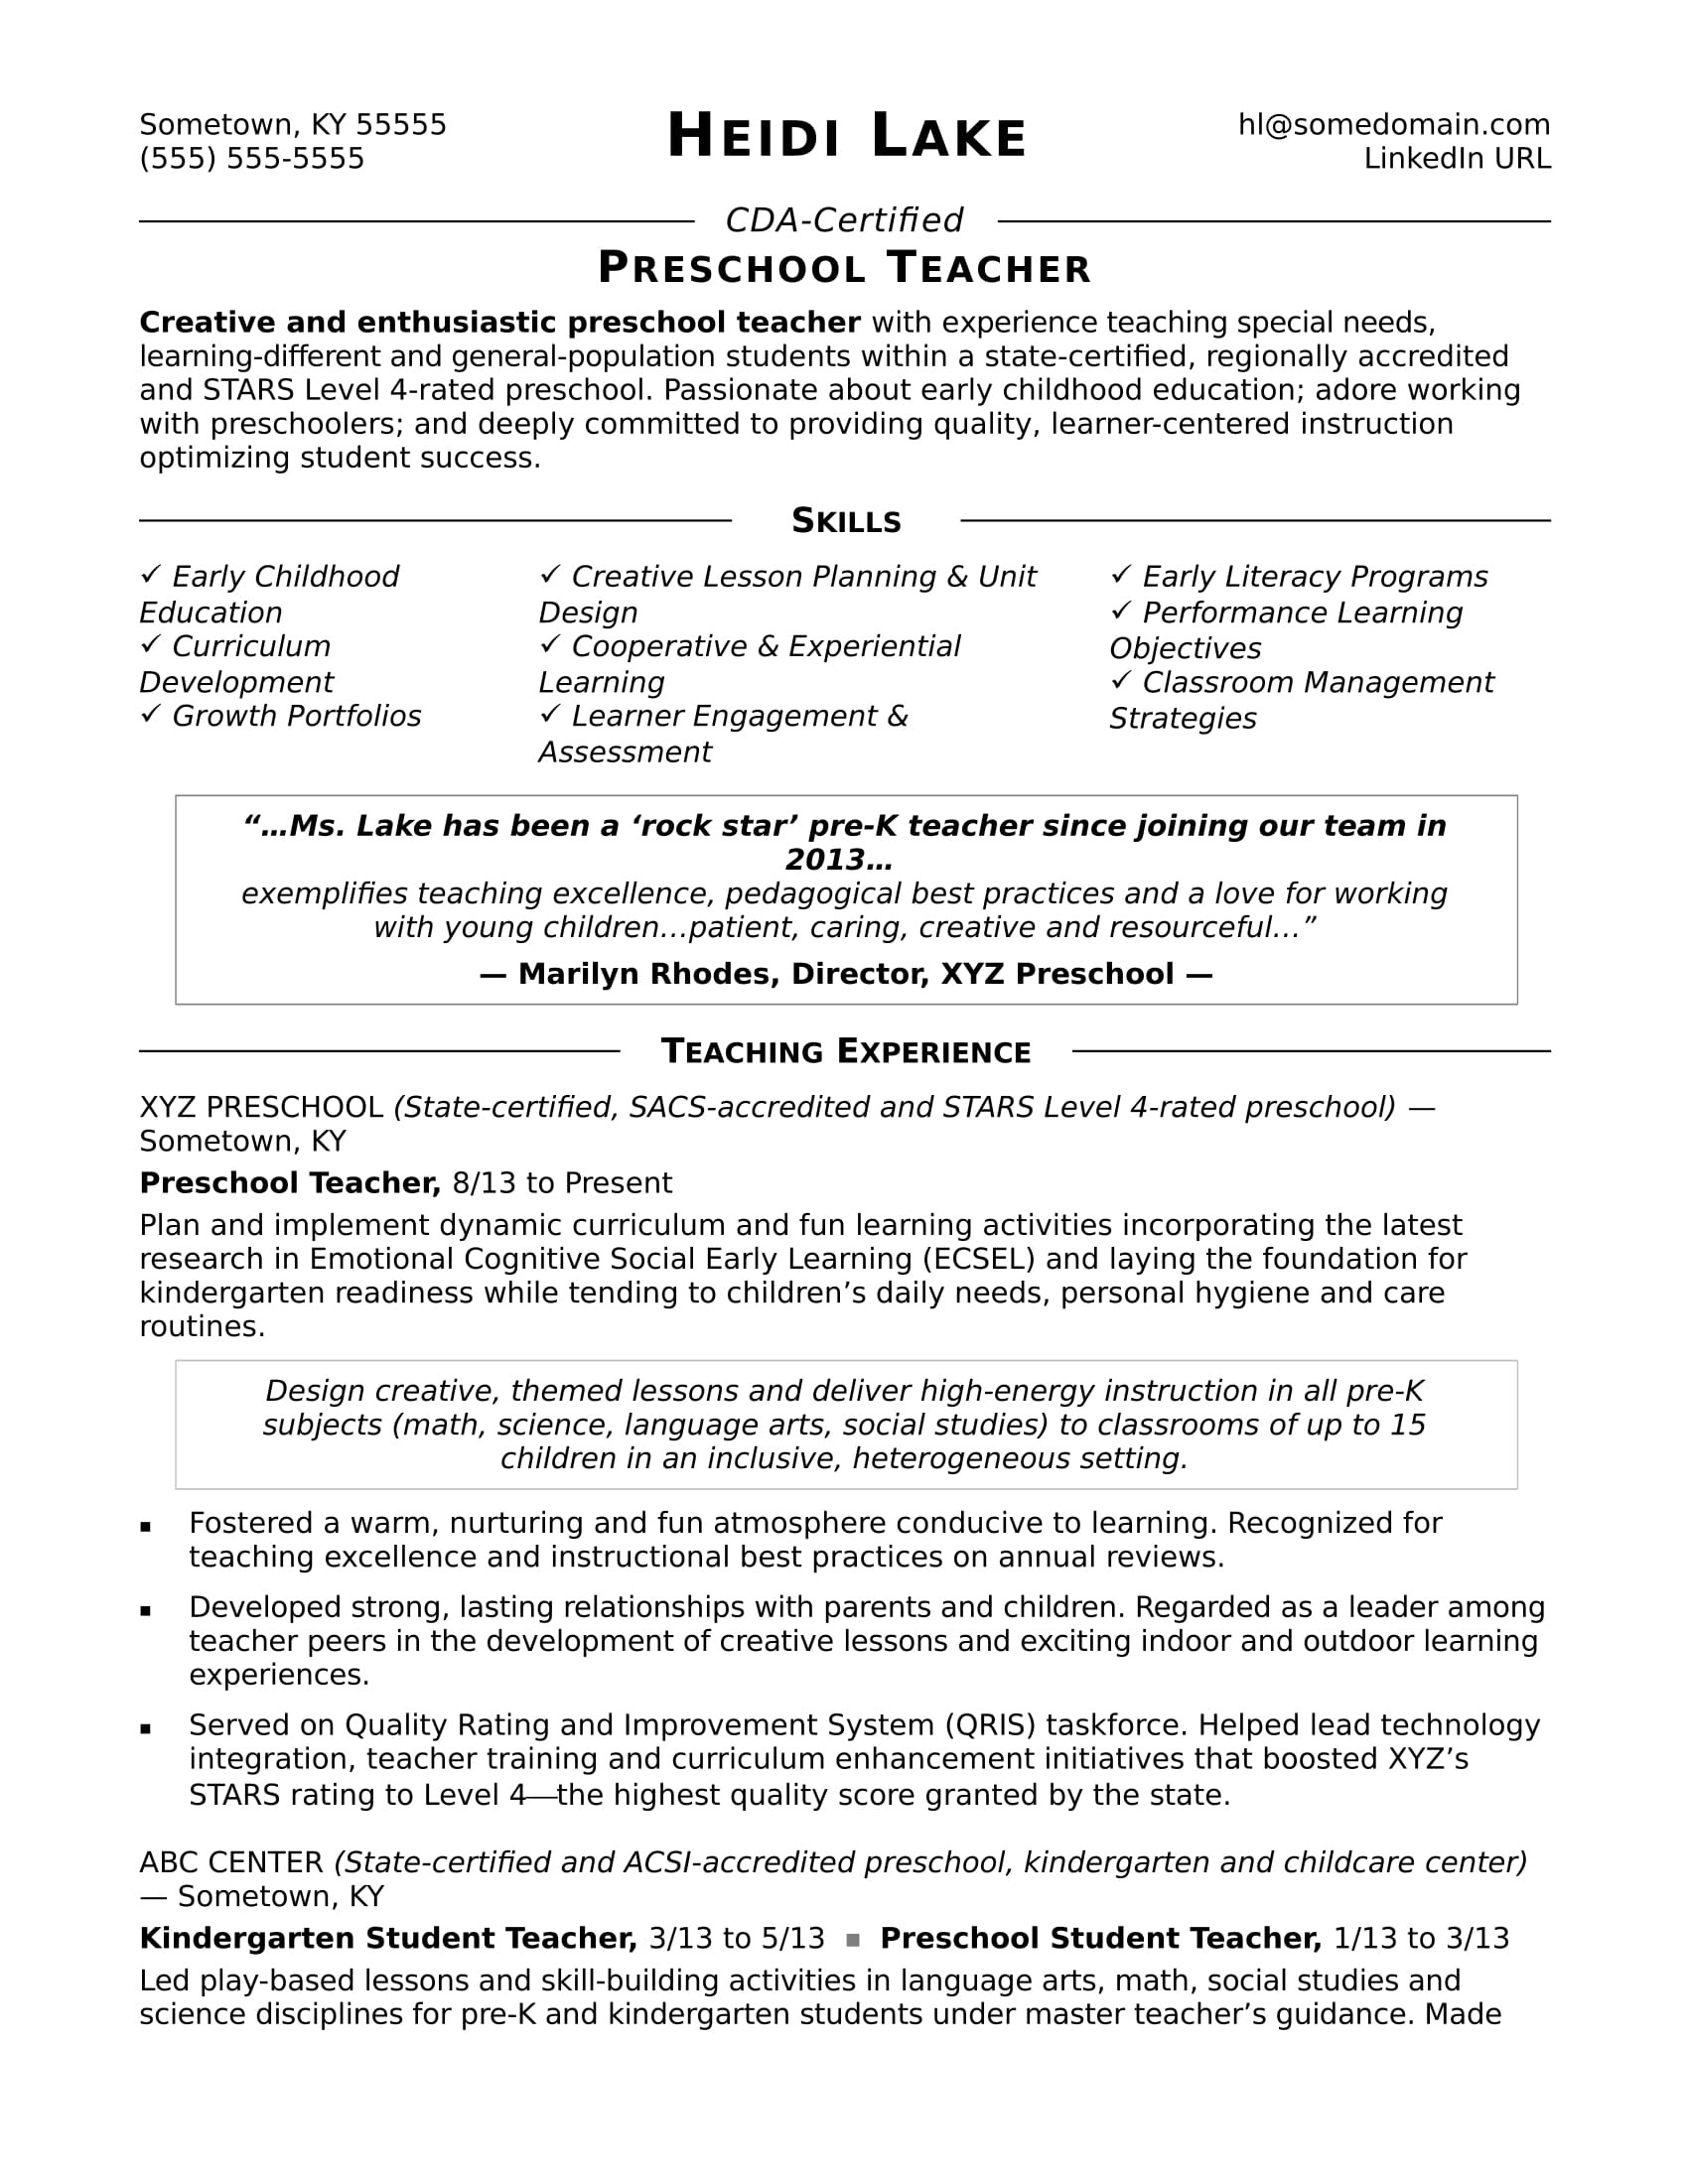 Kindergarten Teacher Resume Sample No Experience Preschool Teacher Resume Sample Monster.com